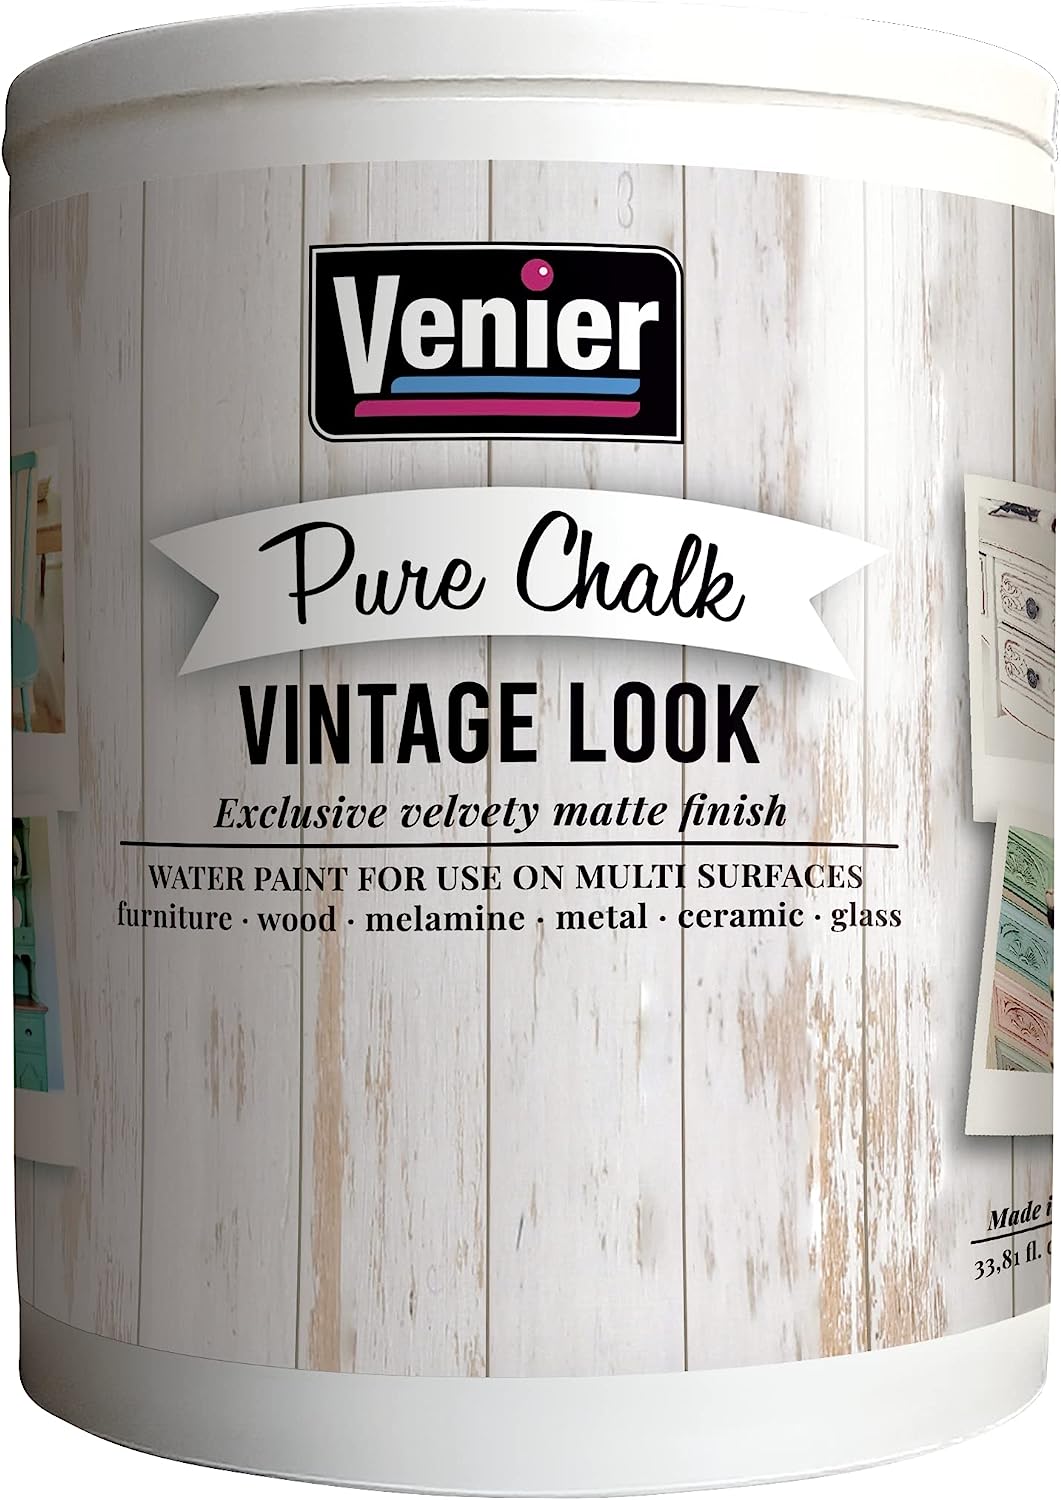 Pure Chalk Paint Venier,Gray Vintage Look - 33.81 [...]